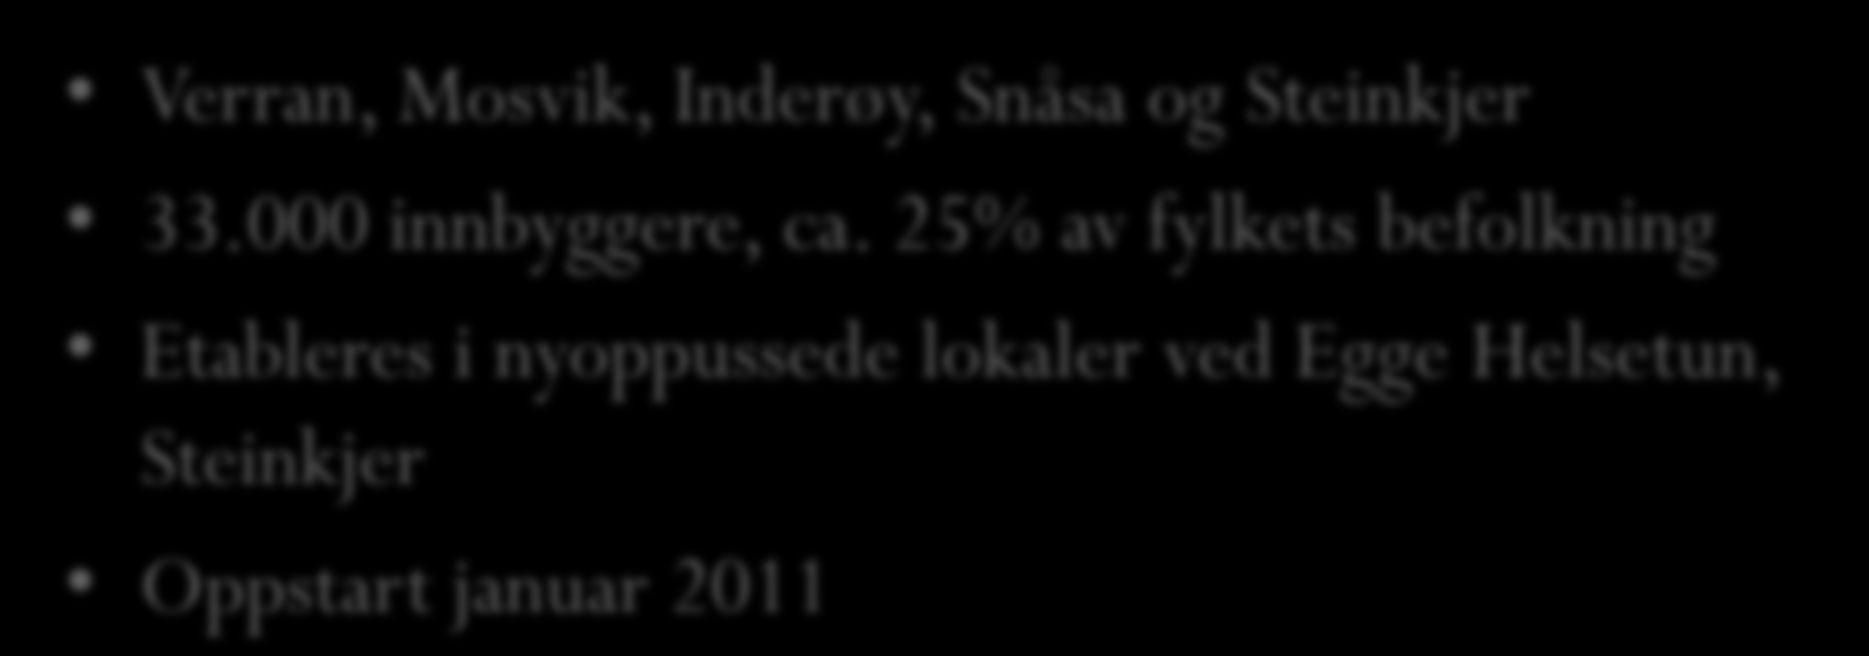 Kommunene i DMS Inn-Trøndelag Verran, Mosvik, Inderøy, Snåsa og Steinkjer 33.000 innbyggere, ca.